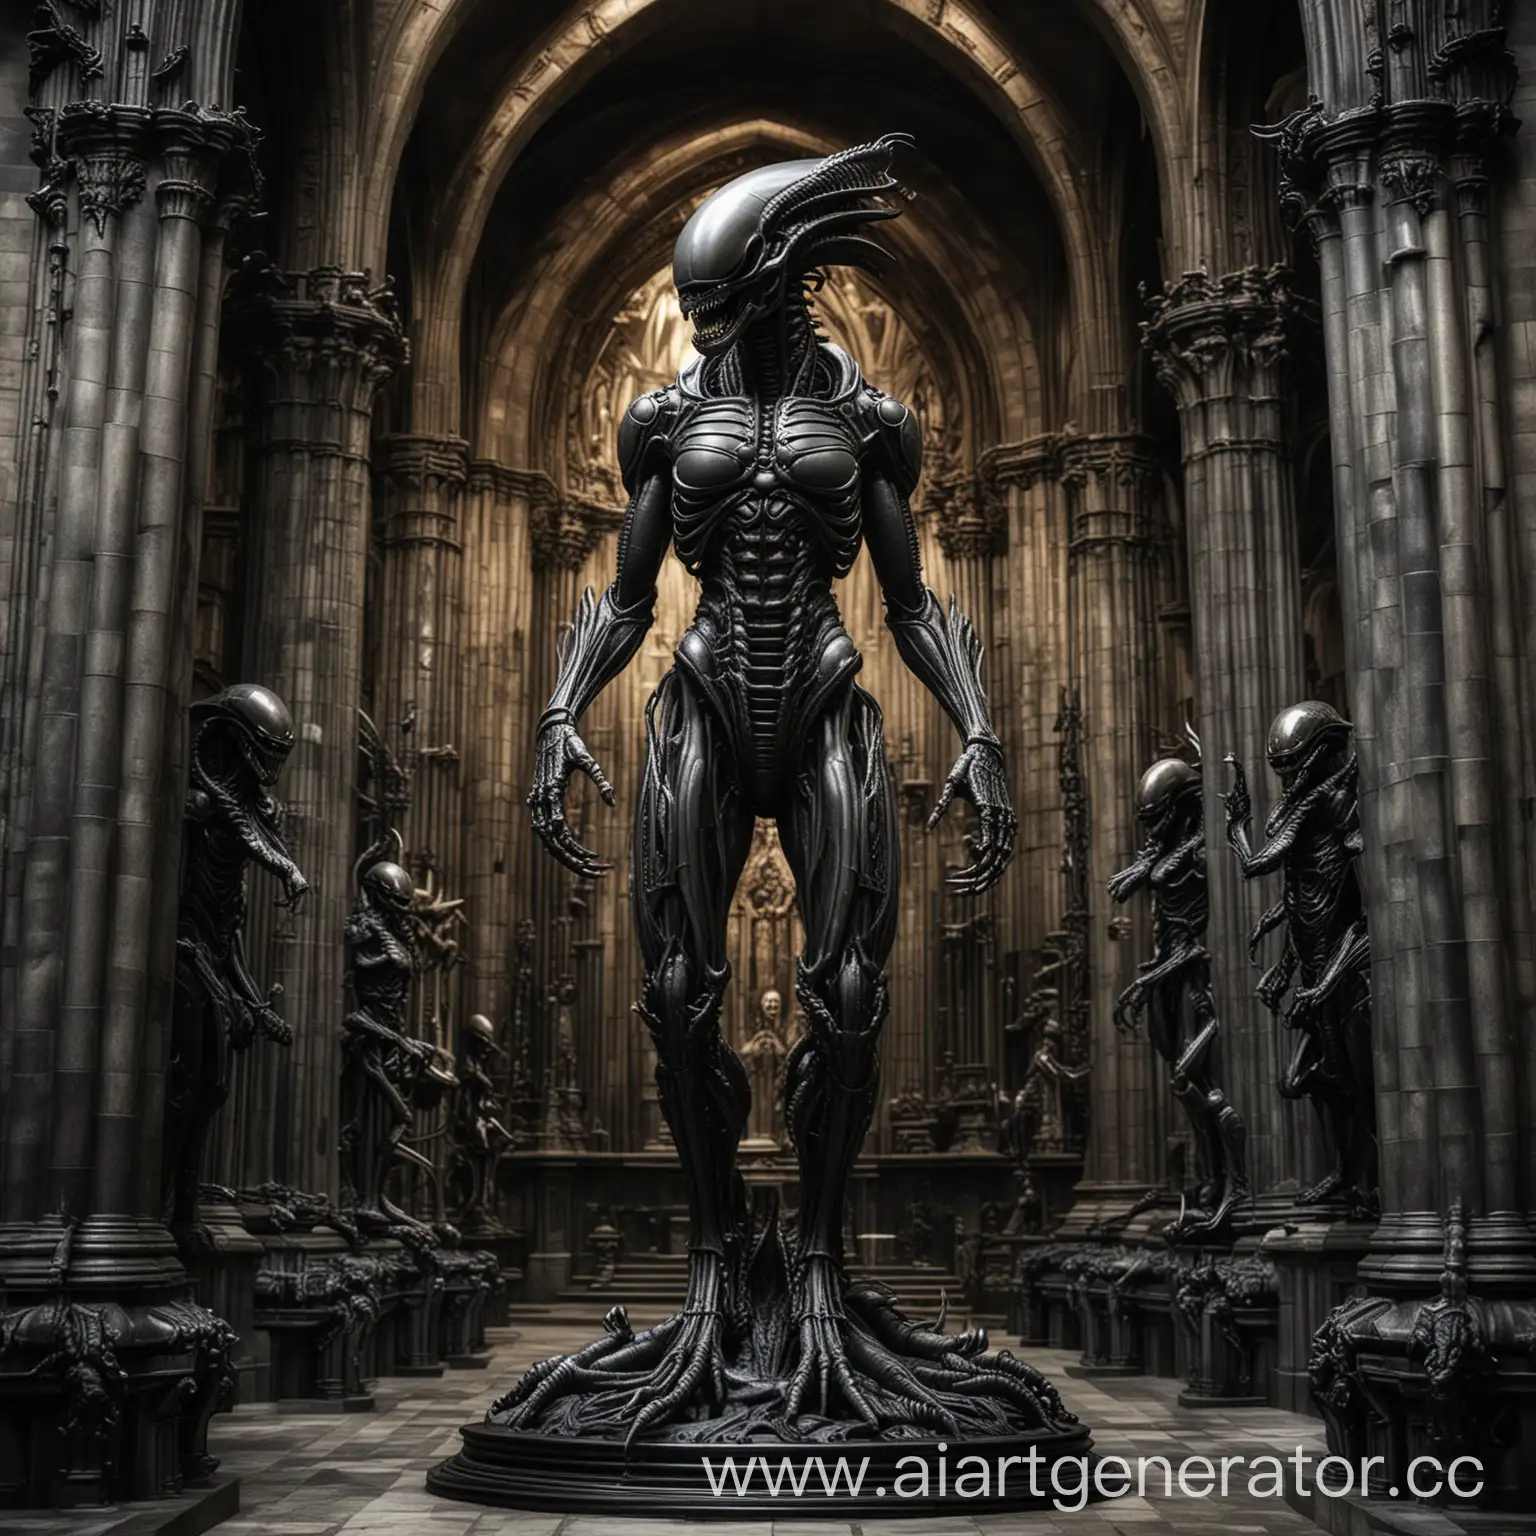 стиль Гигера, металлическая статуя ксеноморфа-Чужого в средневековом готическом соборе, максимальная чёткость изображения